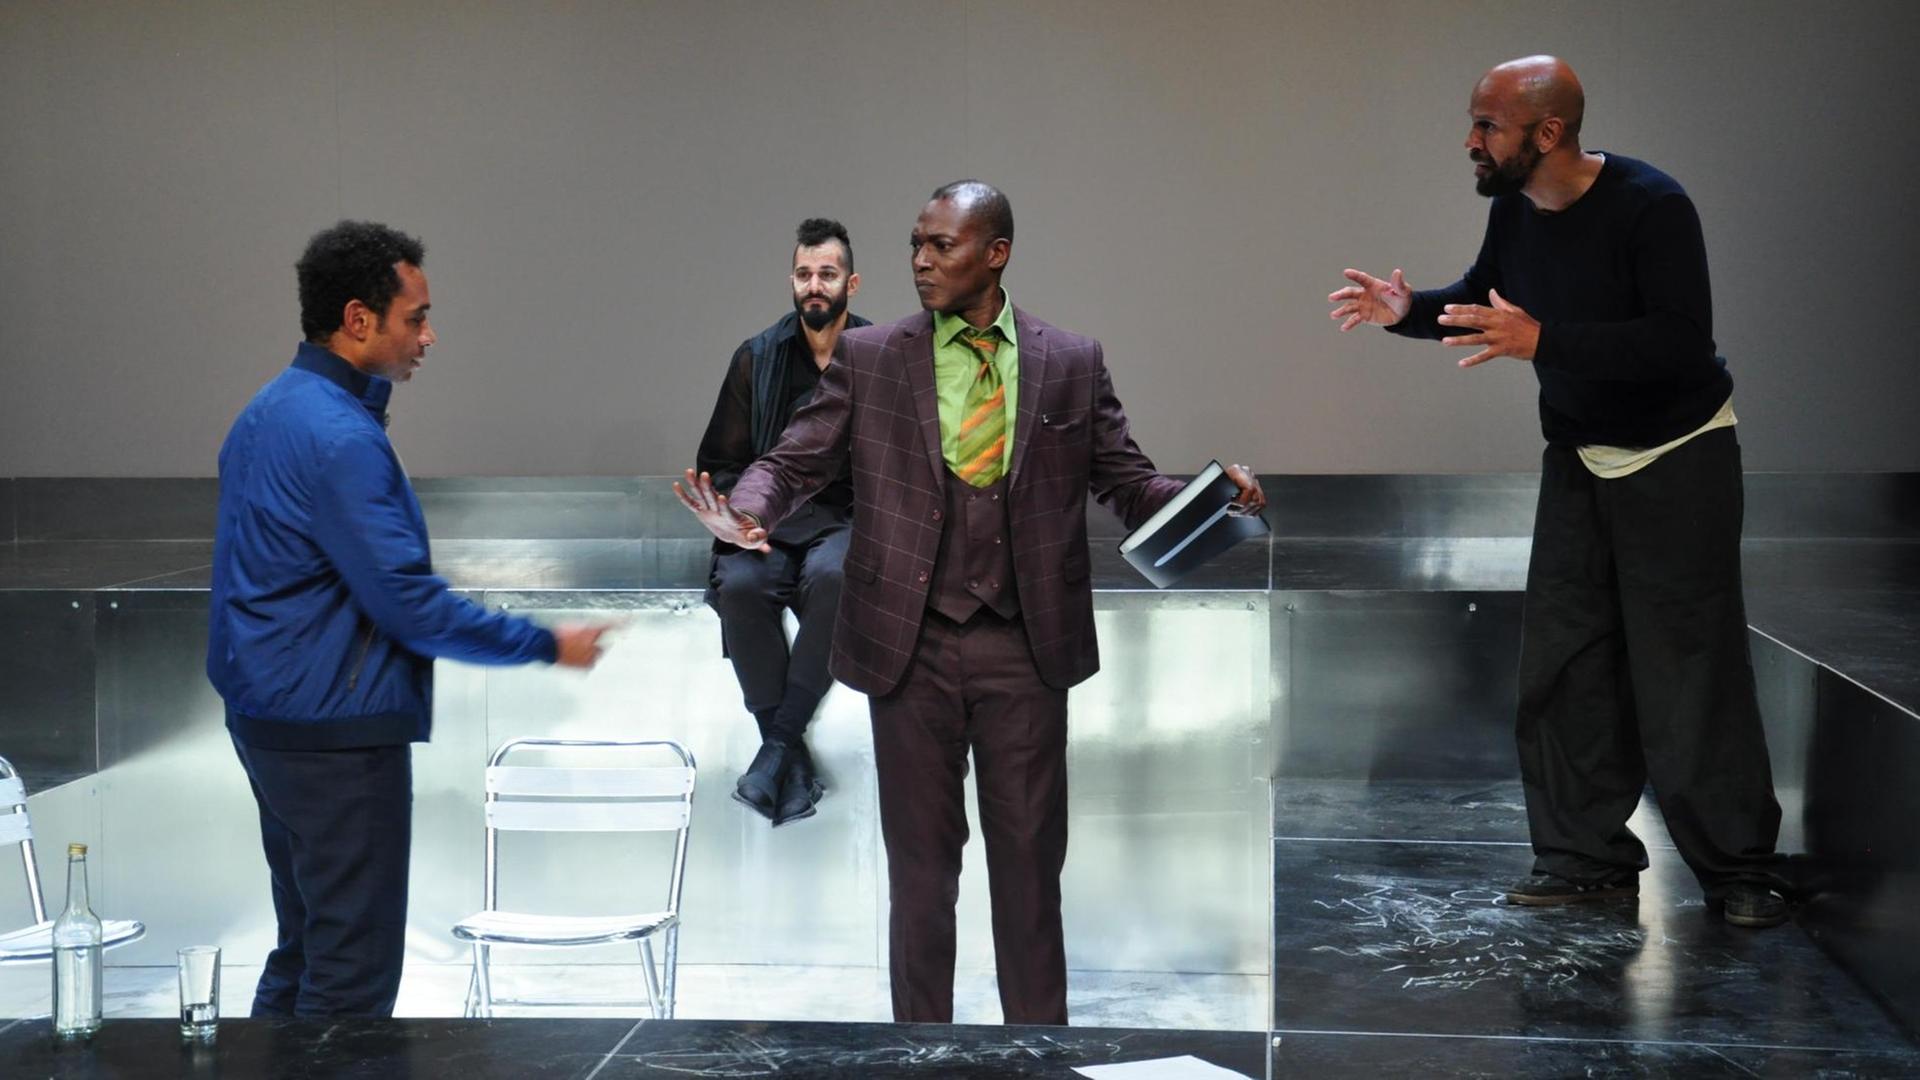 Vier schwarze Männer auf der Bühne. Drei sprechen im Stehen miteinander, einer sitzt auf einem Stuhl im Hintergrund. Eine Szene aus dem Theaterstück: "Walking large" von Toks Körner